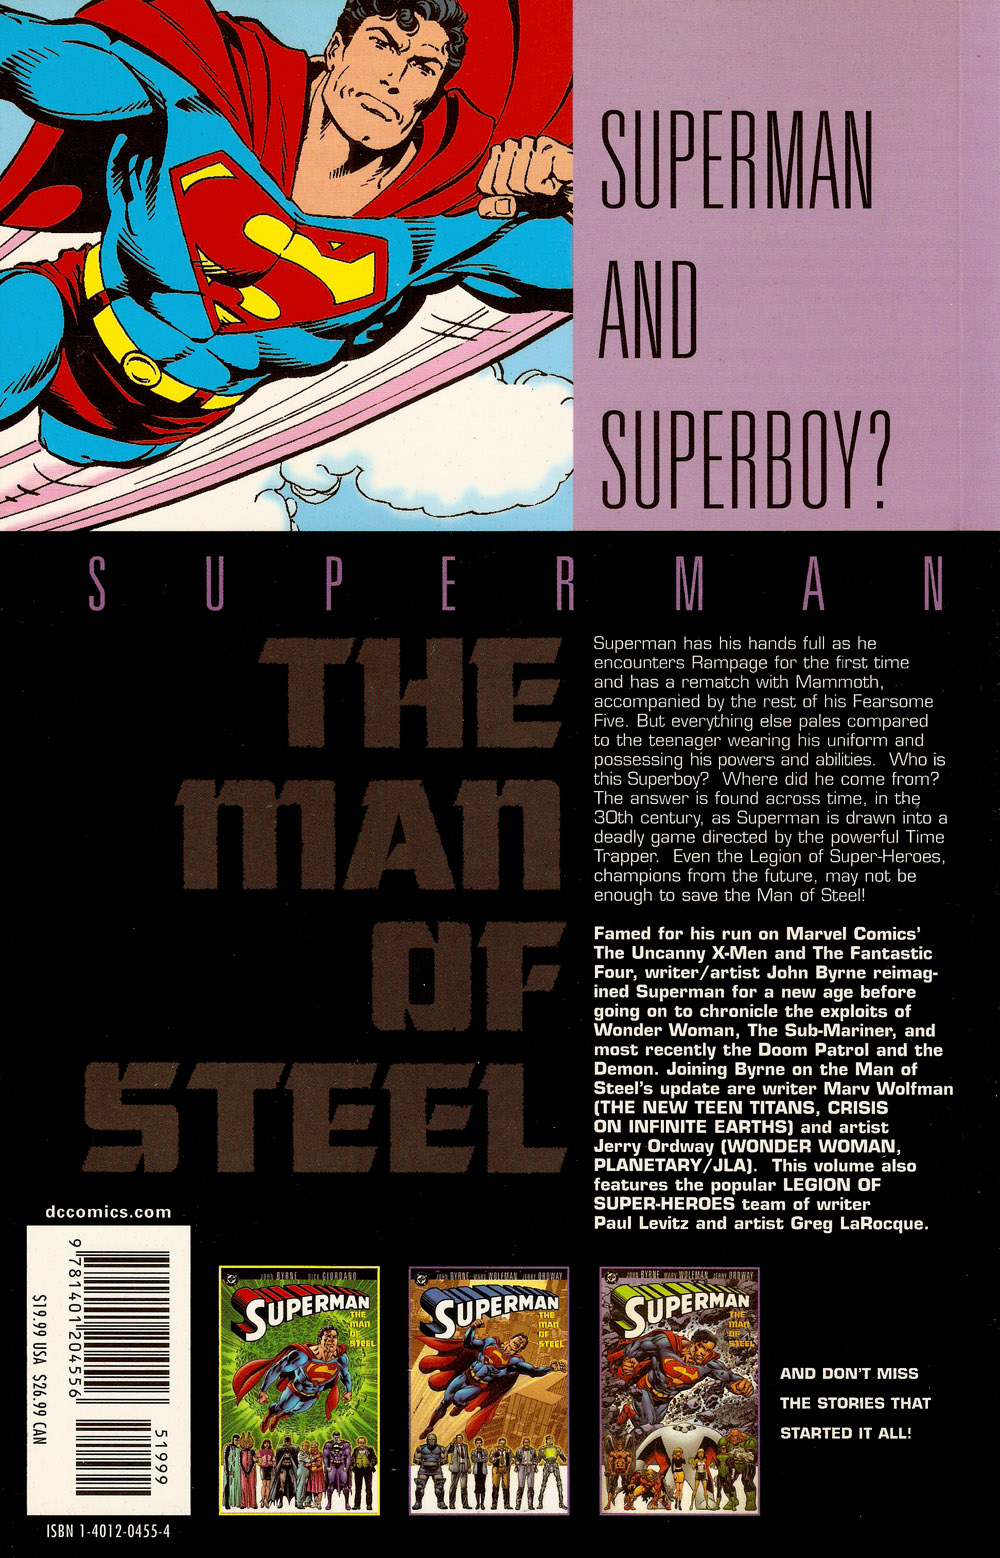 Man of Steel Vol. 4B